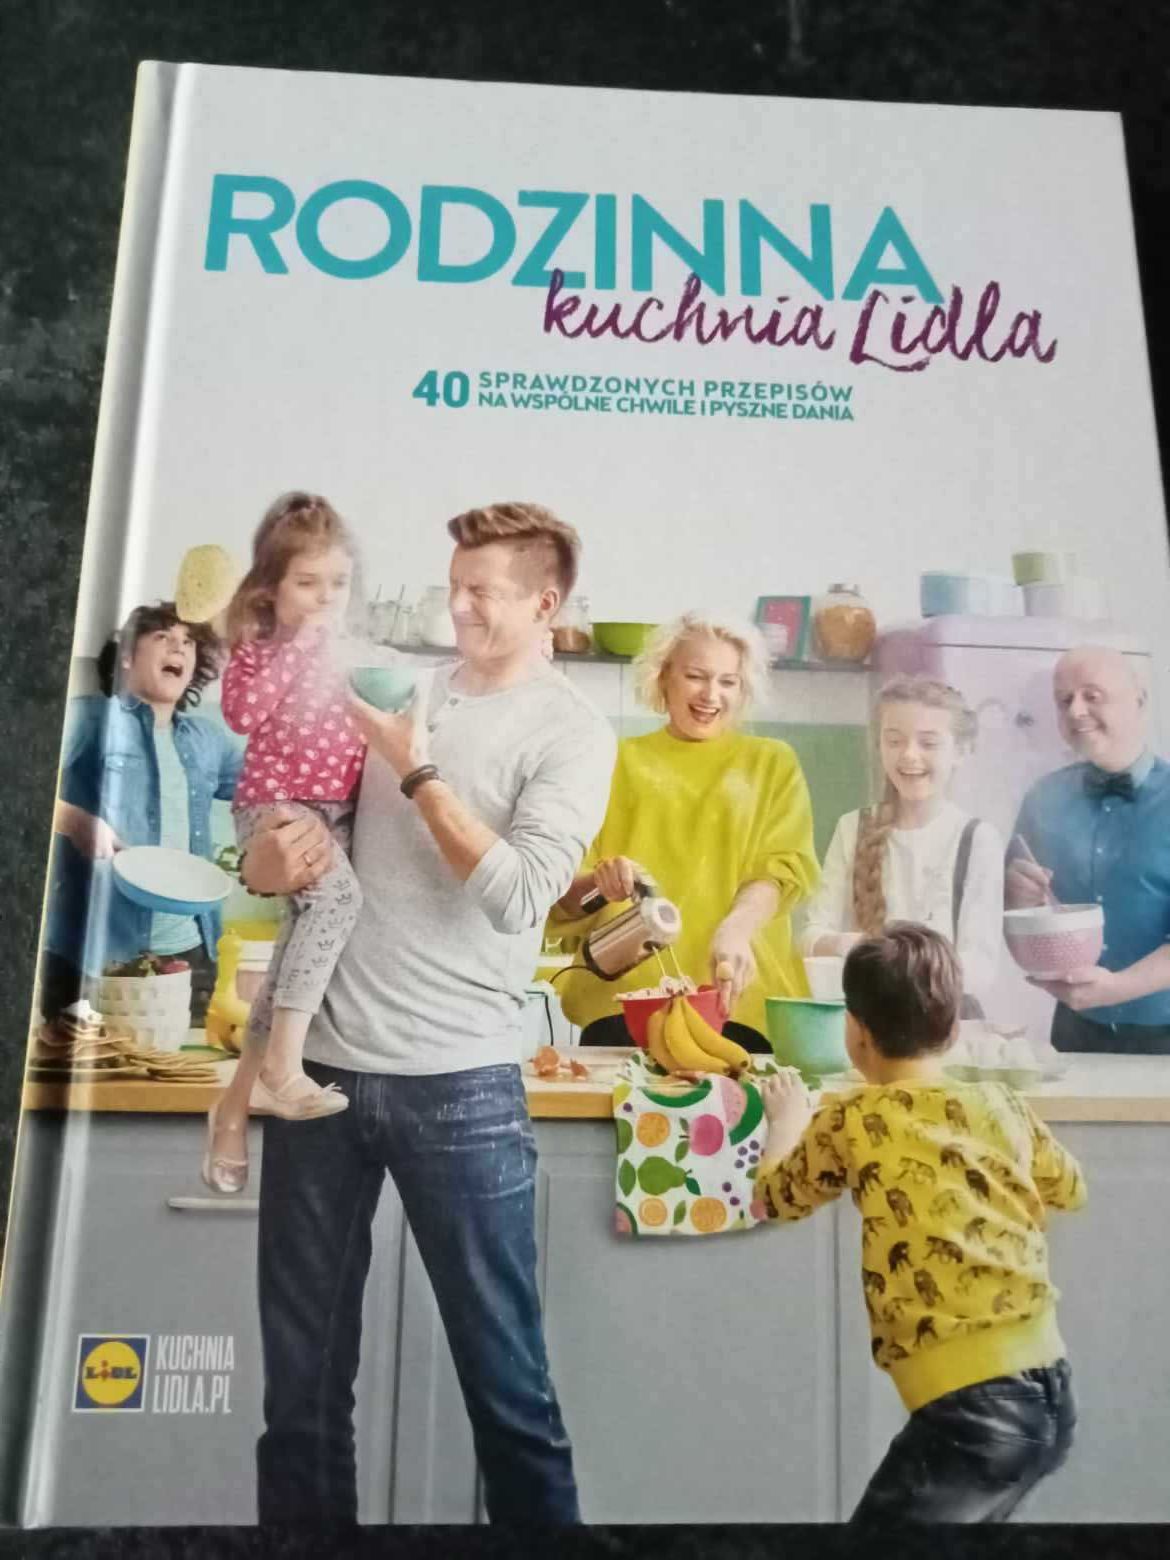 Nowa książka "Rodzinna kuchnia Lidla. 40 sprawdzonych przepisów"